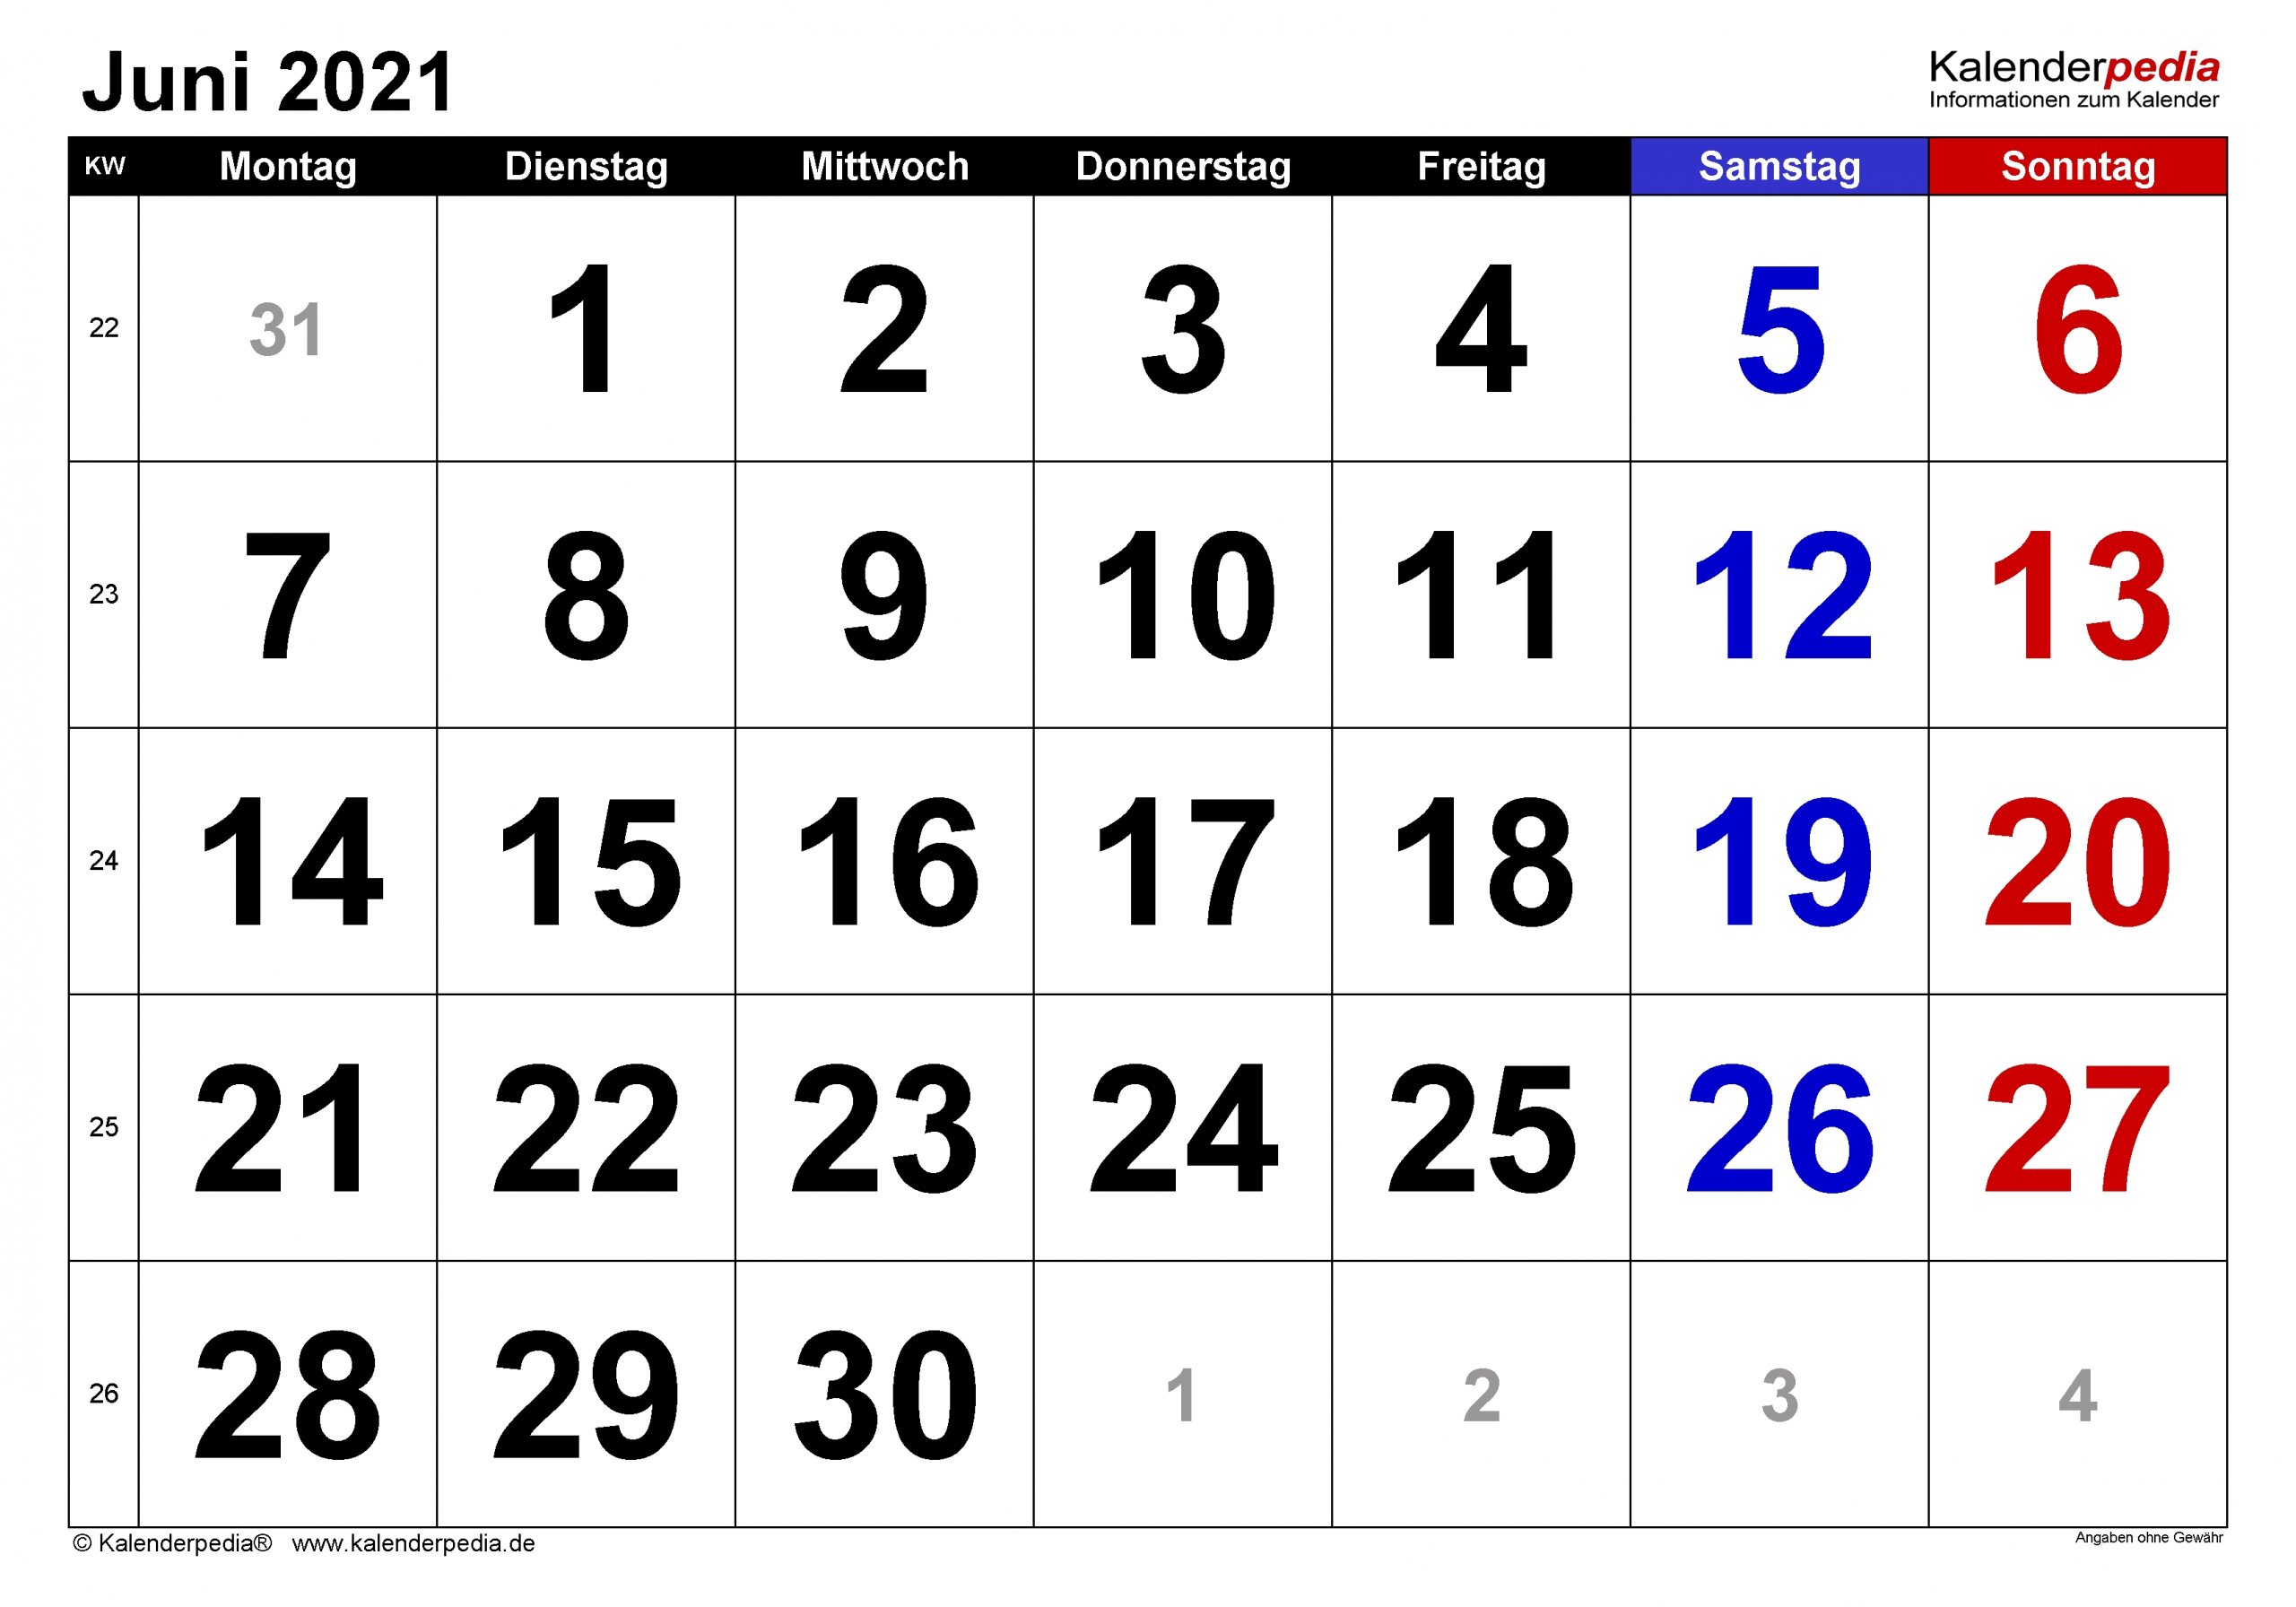 Get Kalender 2021 Juni